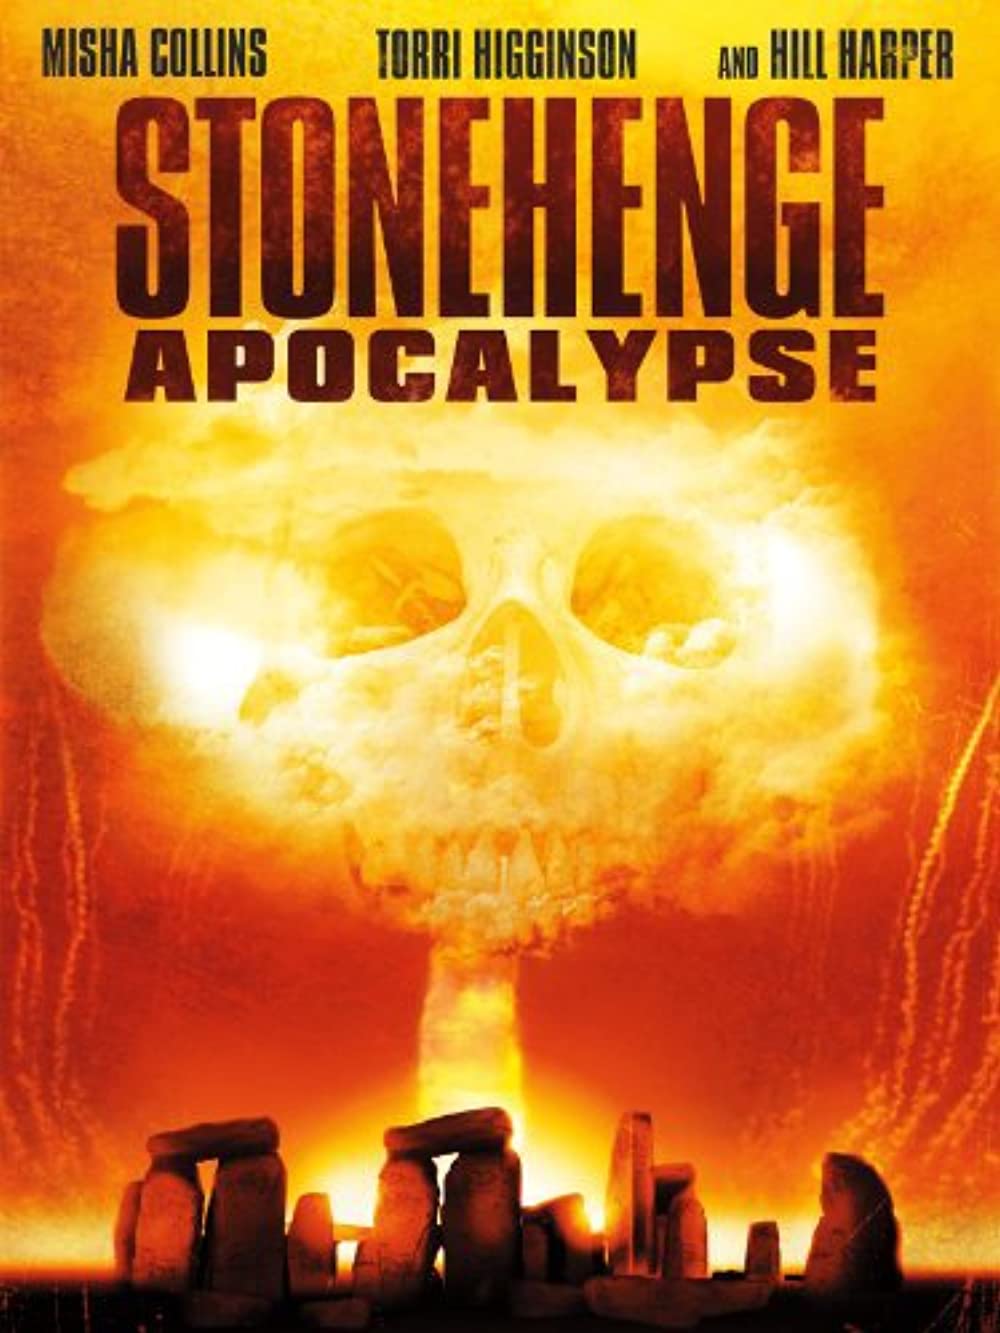 Stonehenge Apocalypse Movie Download - Stonehenge Apocalypse Movie Review